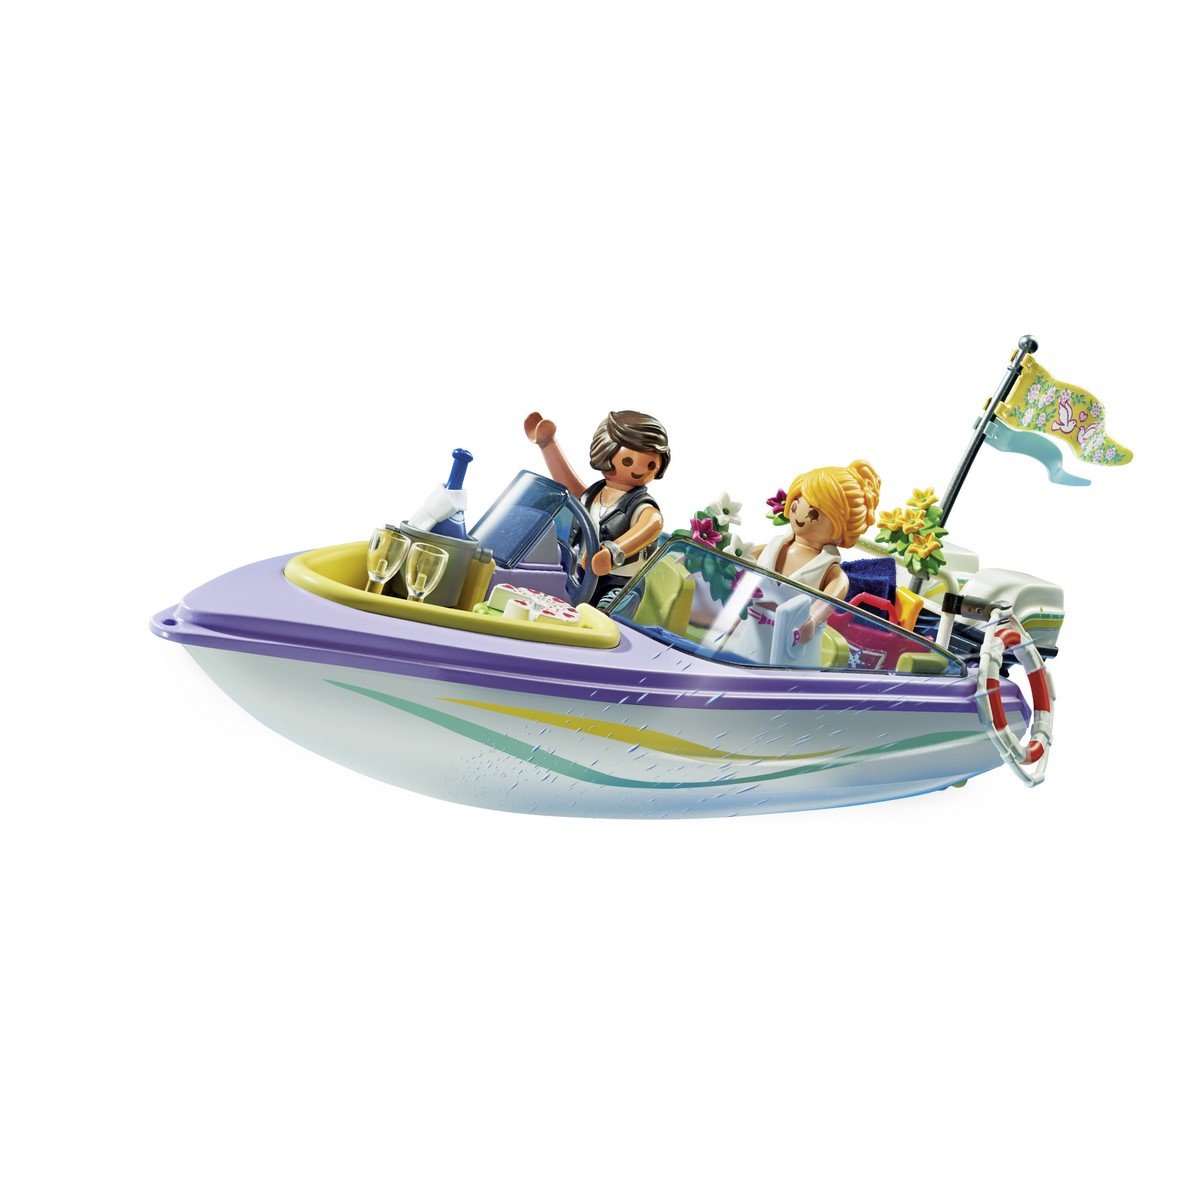 Mariés et bateau Playmobil City Life 71366 - La Grande Récré